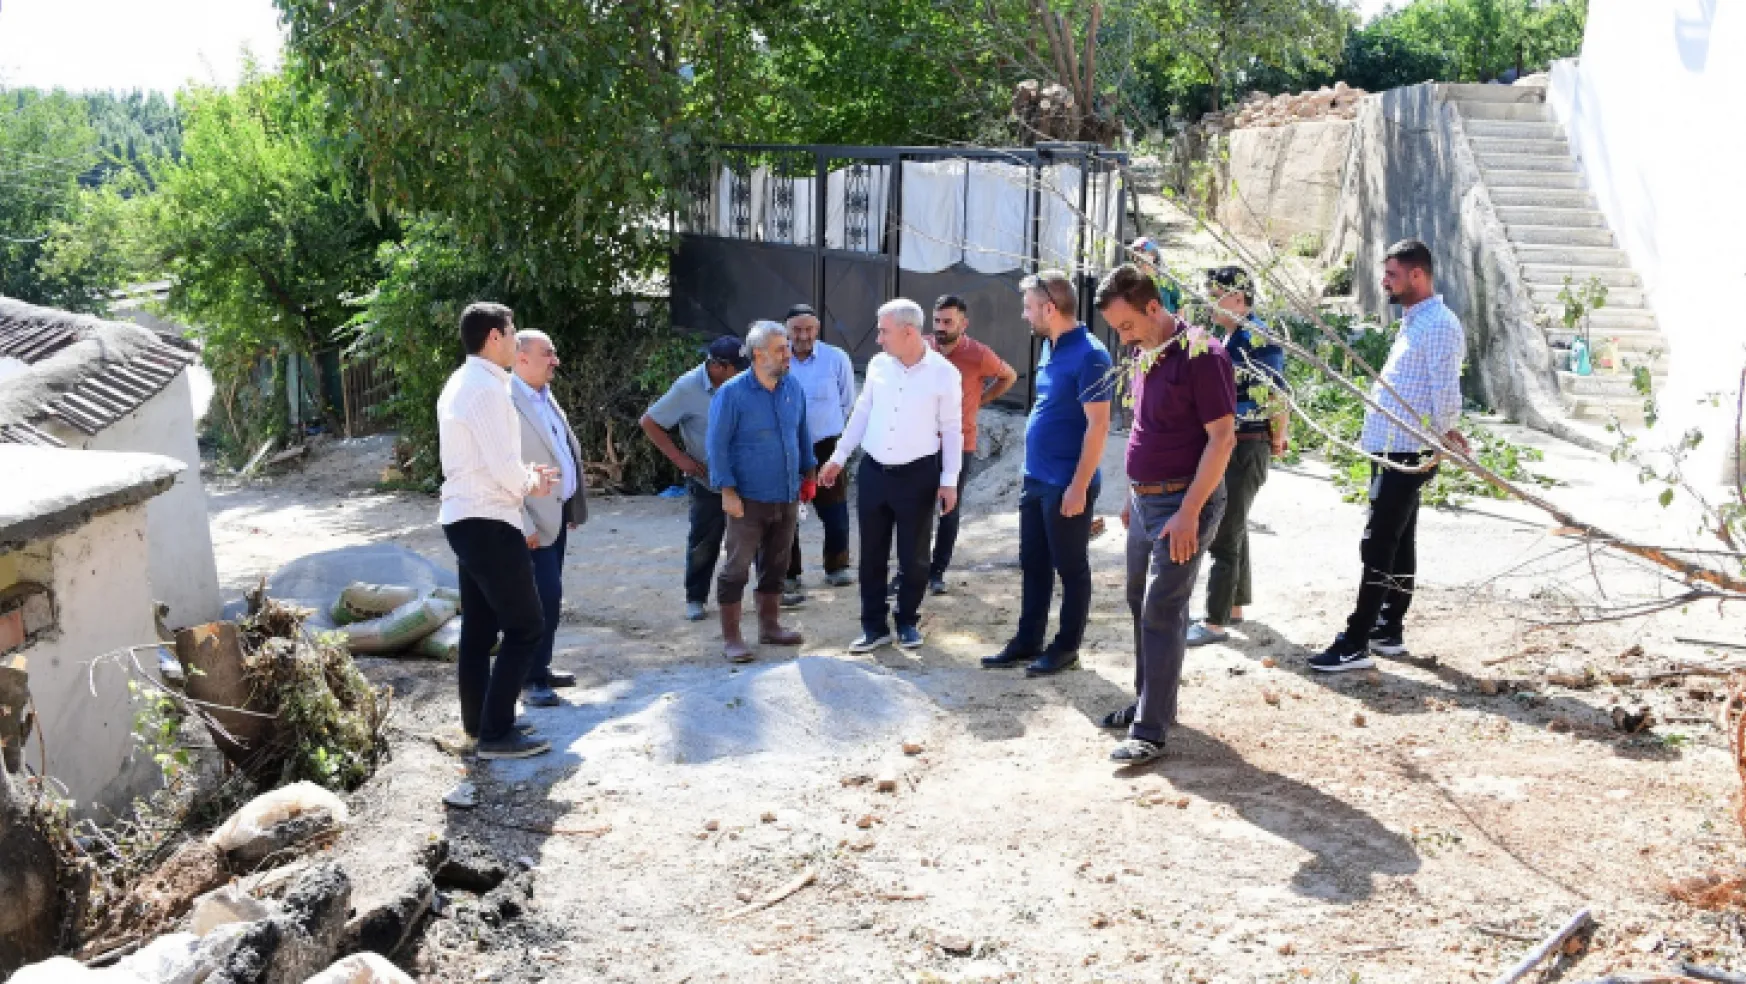 Yeşilyurt Belediyesi, Kendirli İle Samanköy'ün Bağlantı Yolunu Güvenli Hale Getiriyor